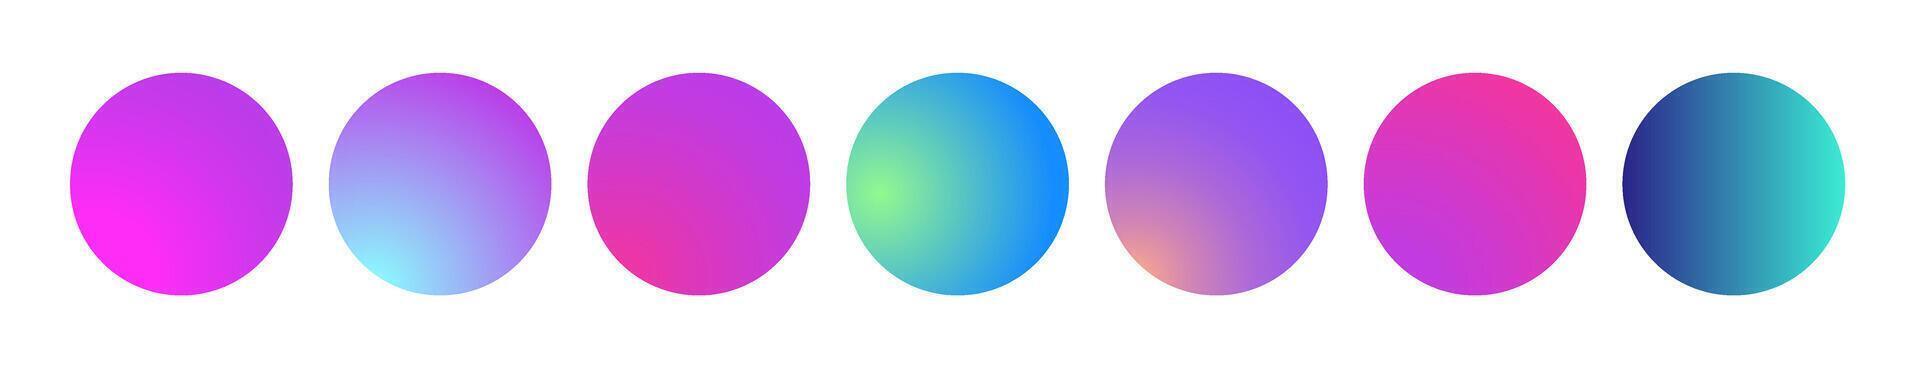 arredondado holográfico gradiente esfera. multicolorido vetor